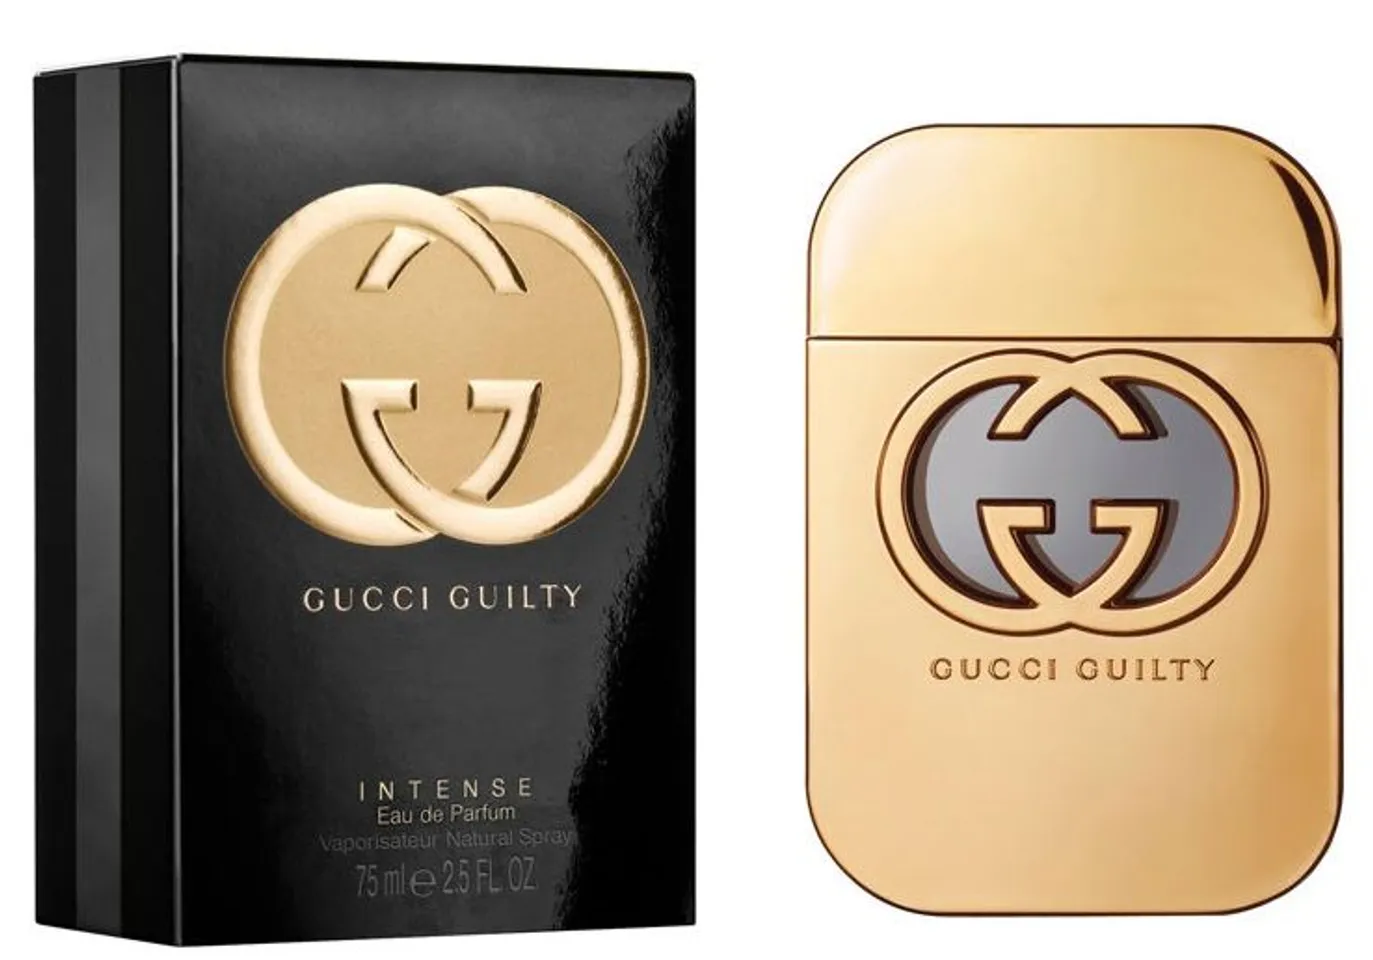 Nước hoa Gucci Guilty Intense hương thơm đầy lôi cuốn, 5ml